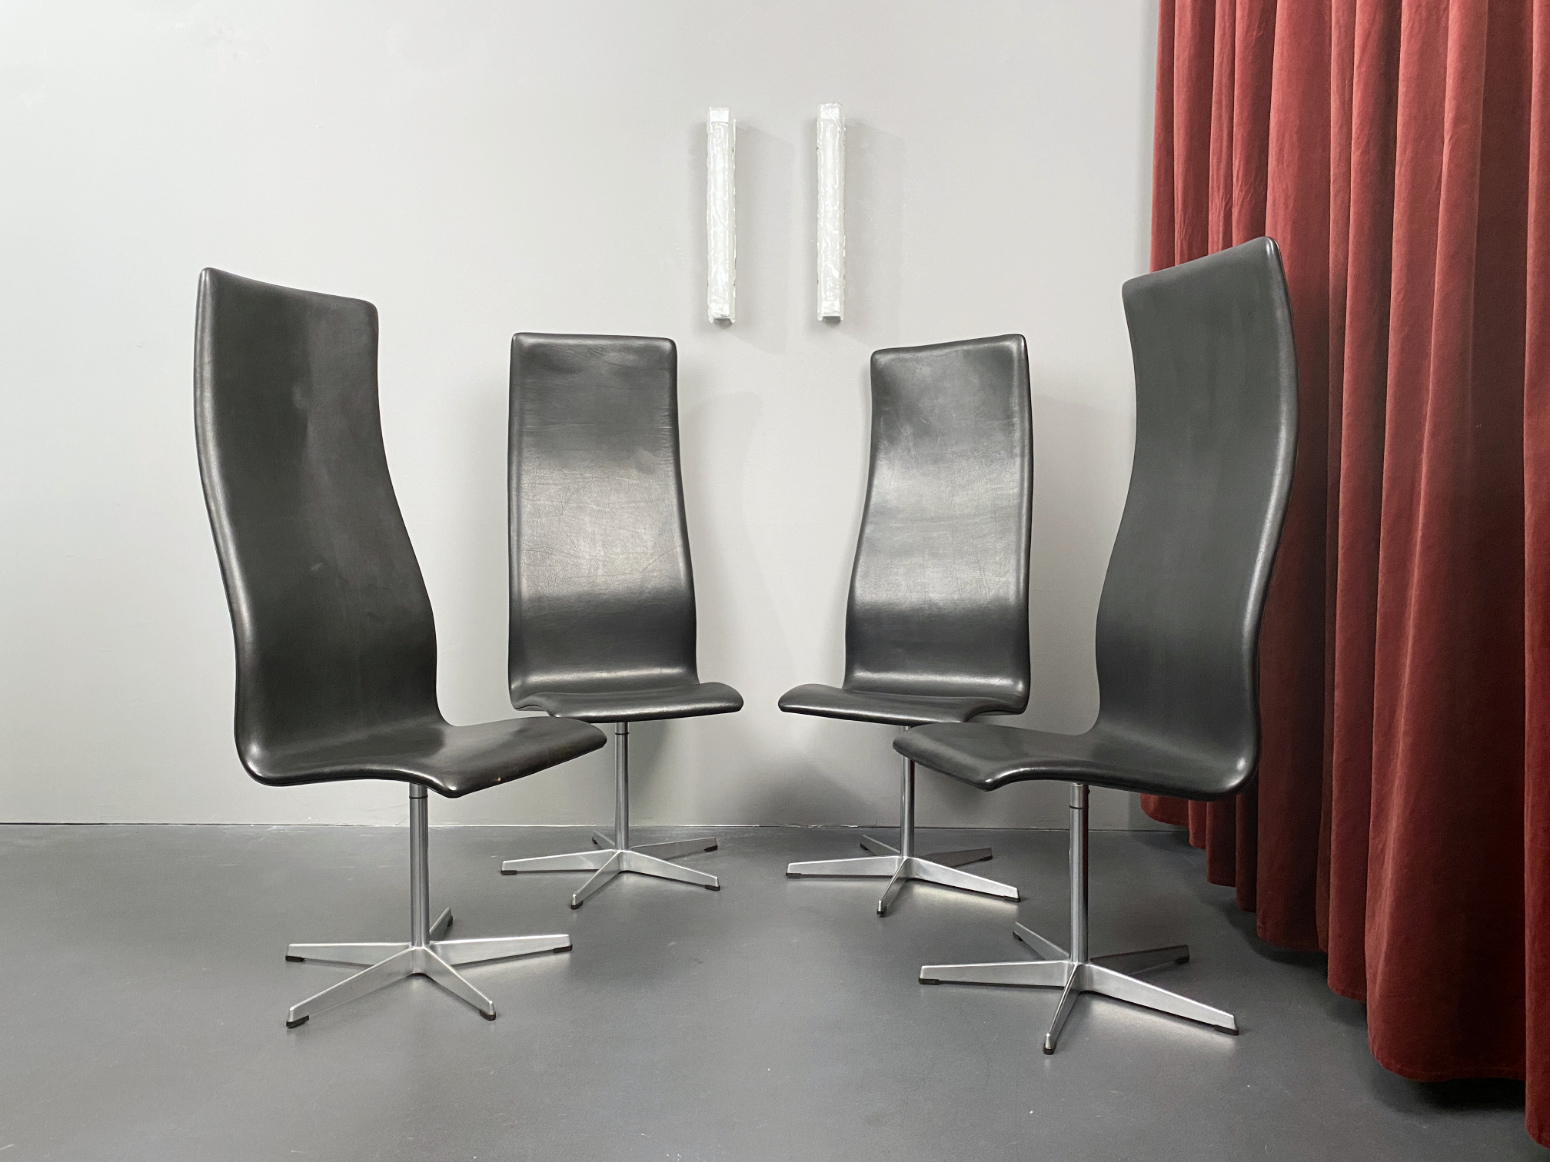 Set of 4 Oxford High-Back Swivel Chairs, Model 3162, black Leather, b y Arne Jacobsen for Fritz Hansen, Denmark, 1960s